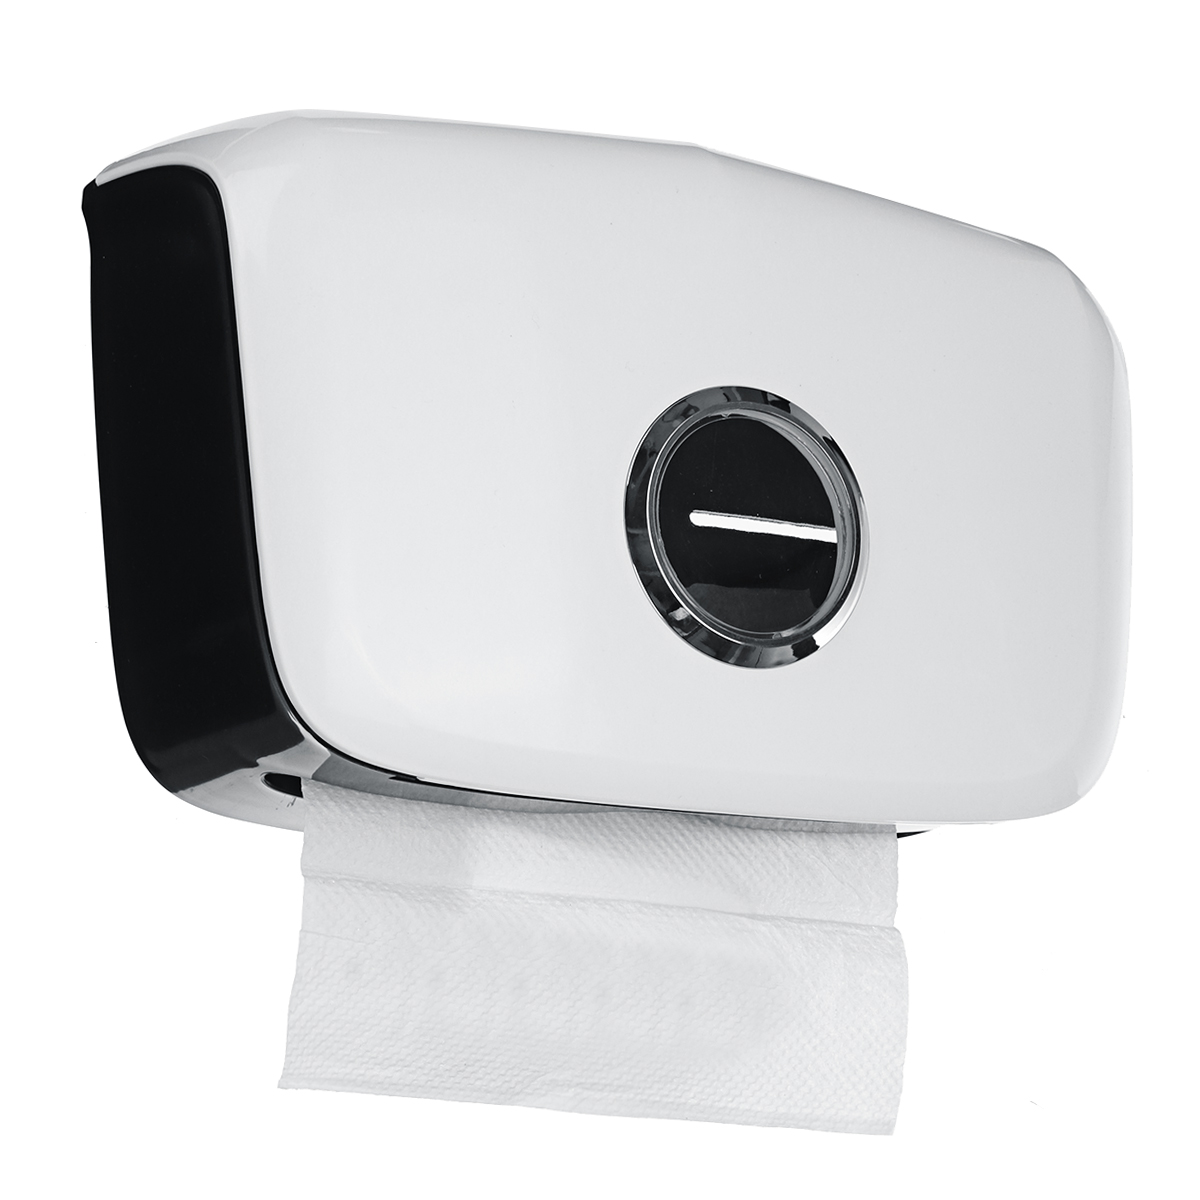 Folded Towel Dispenser Tissue-Dispenser Toilet Paper Holder Paper Storage-Box Wall Mounted Tissue Box Holder